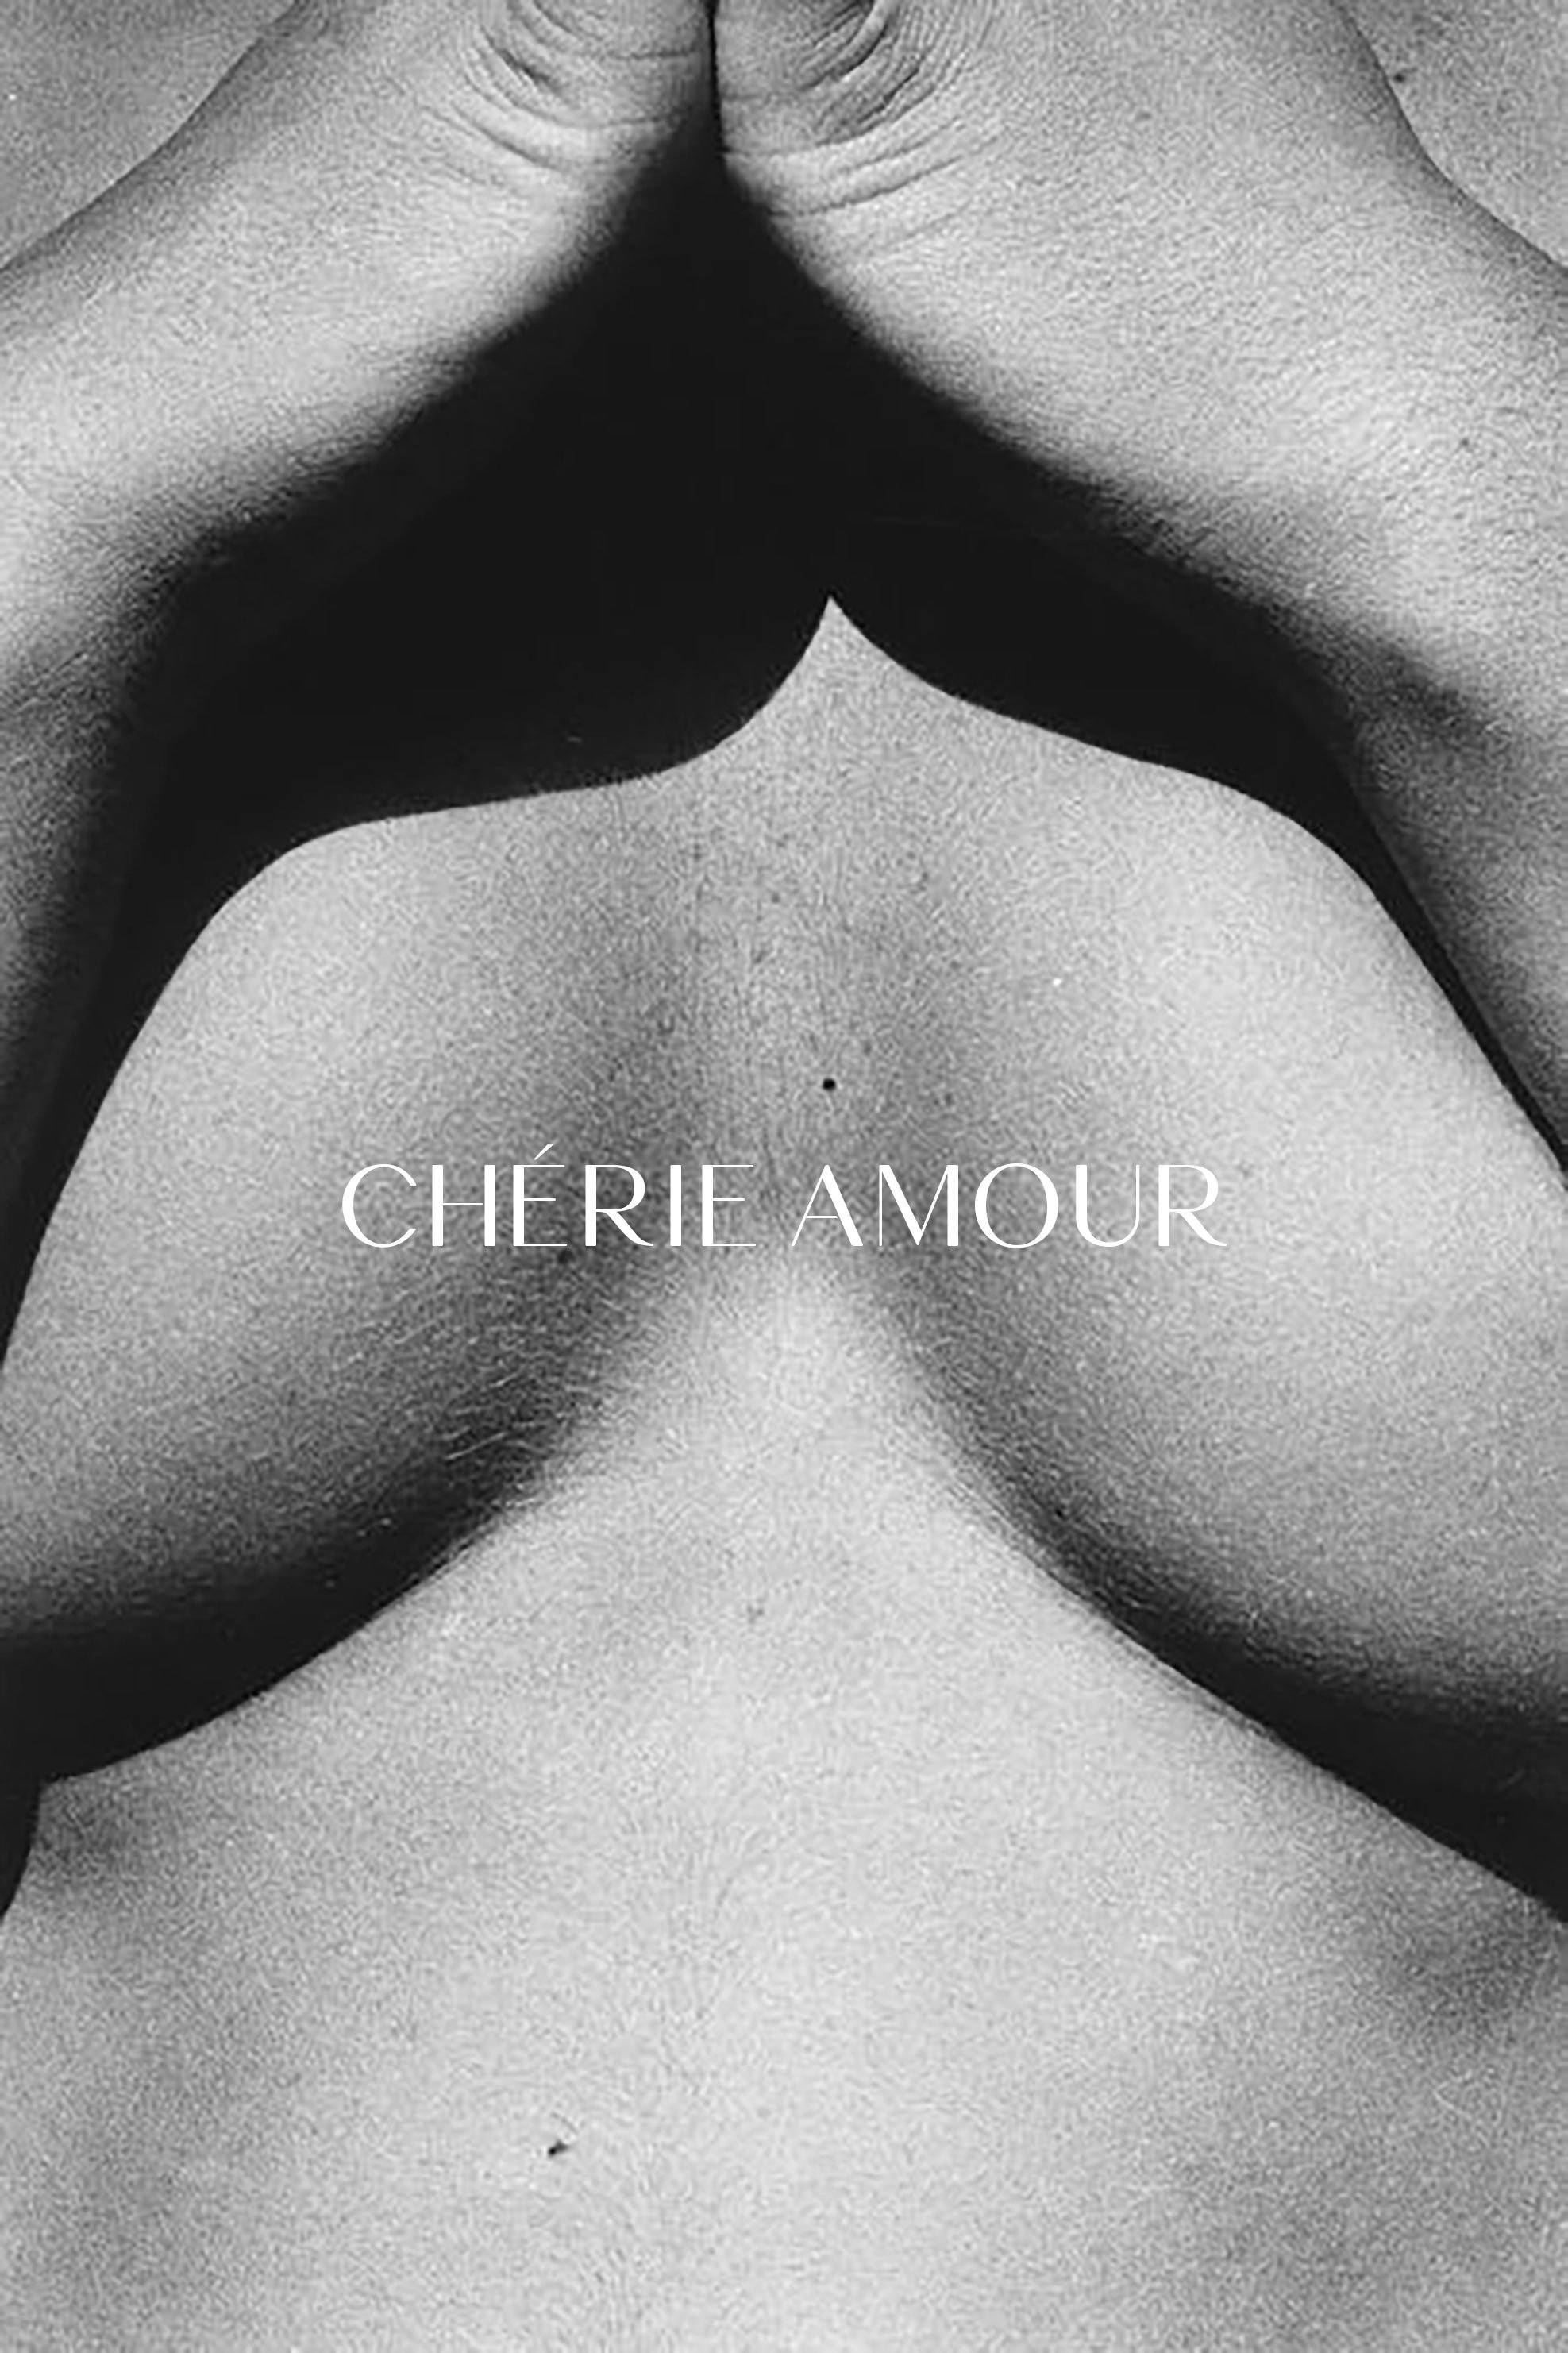 cherie amour logo 2.jpg